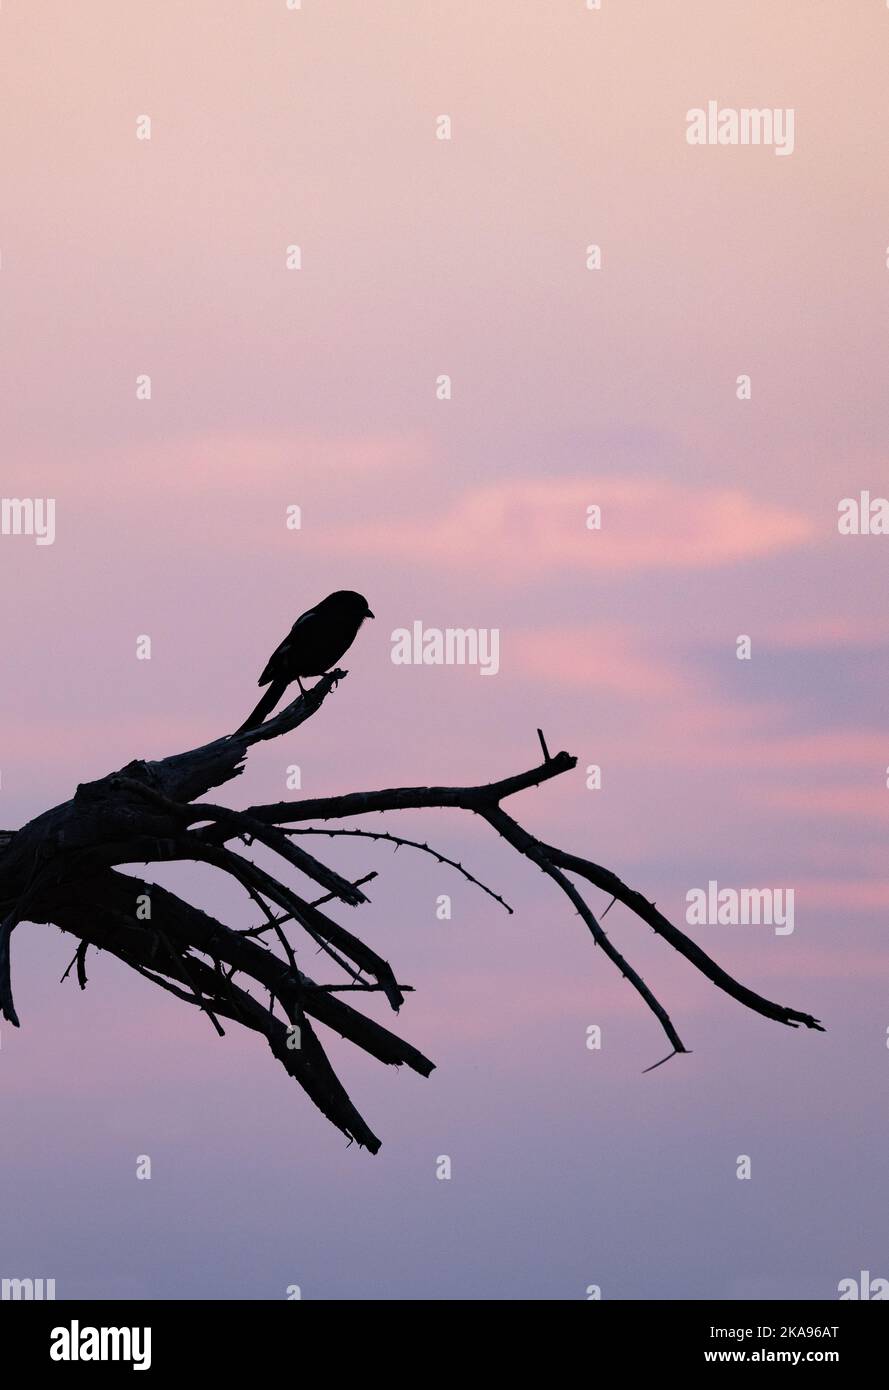 Tramonto - sera cielo rosso al crepuscolo con uccello e albero in silhouette, Botswana Africa. Concetto di pace e tranquillità Foto Stock